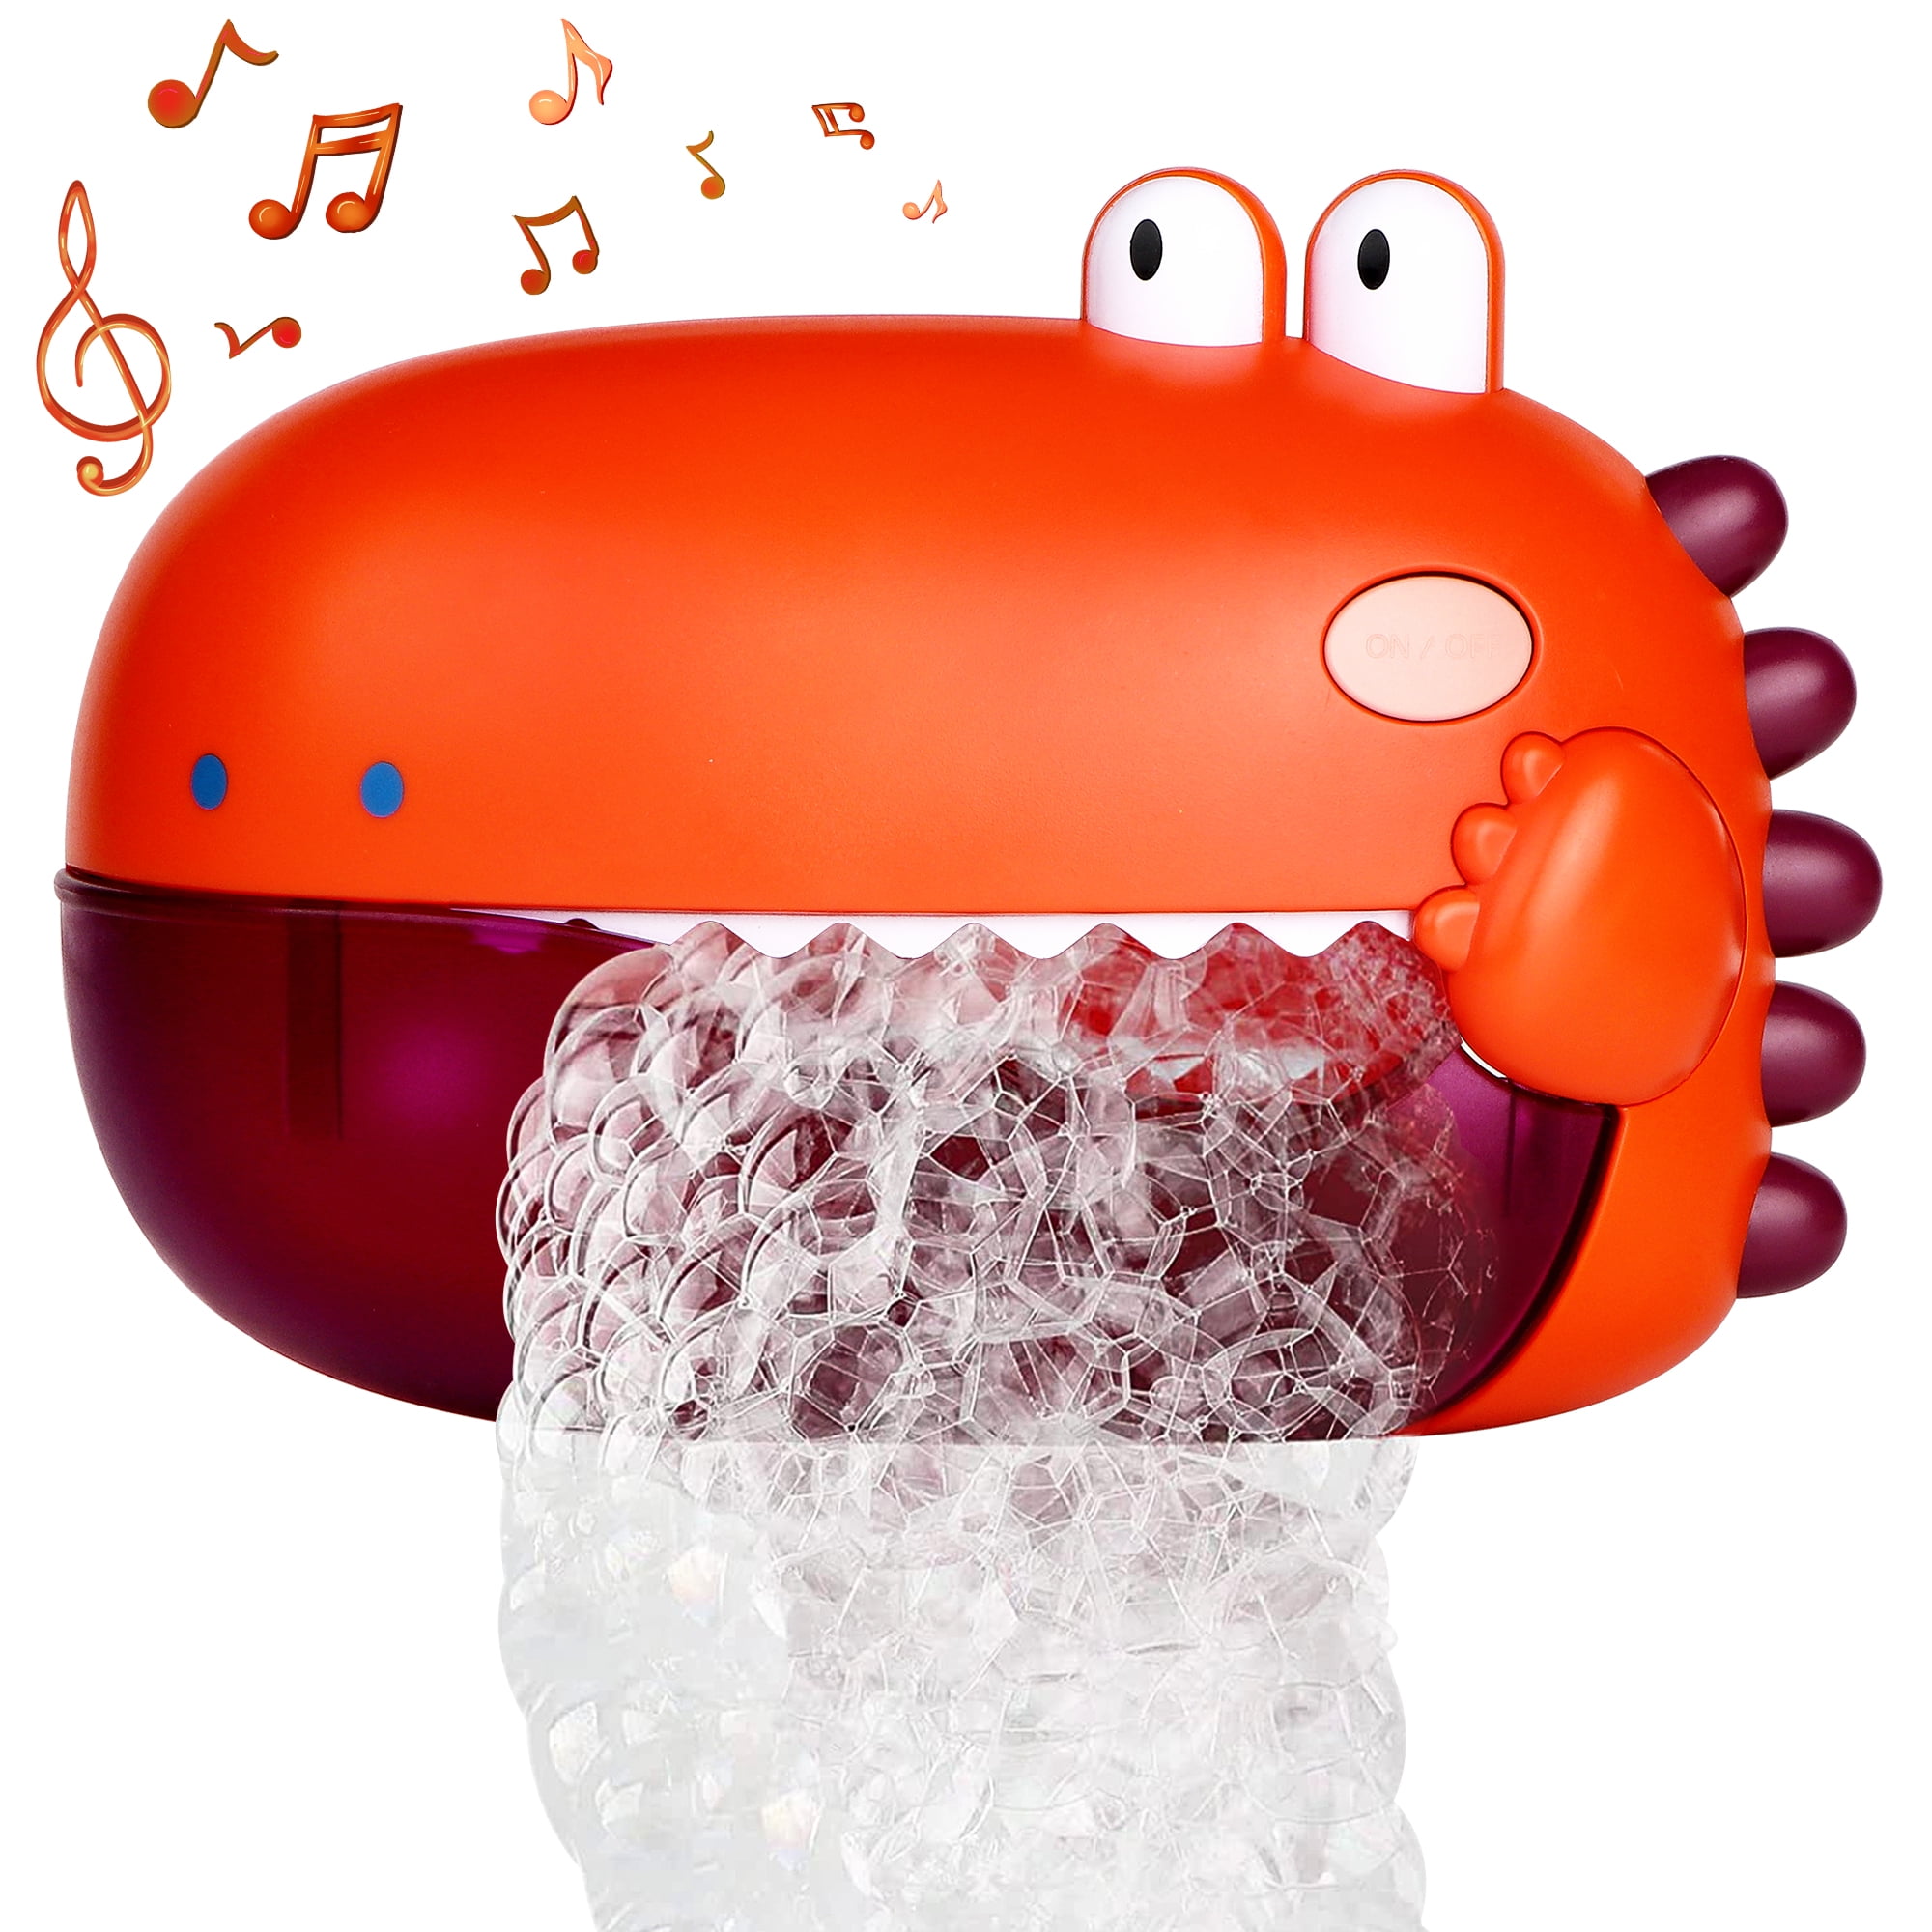 Toddlerino Bath Bubble Maker Toys - Bathtub Bubble Machine for